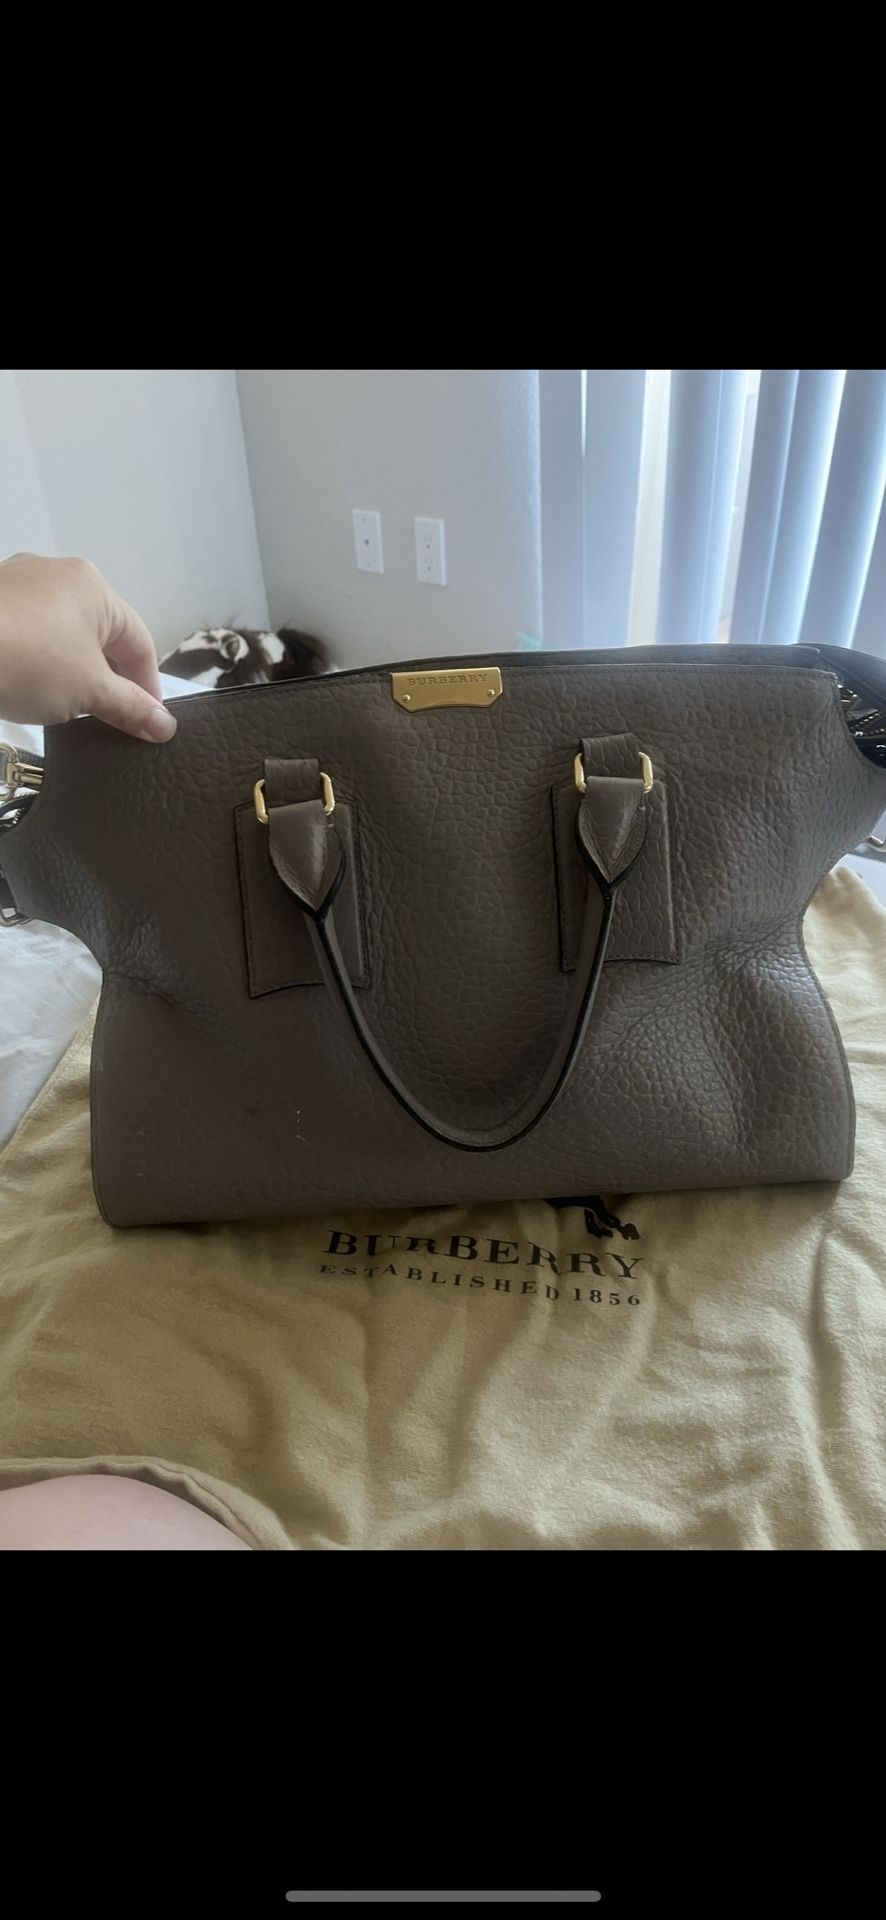 Burberry Handbag Large Gray